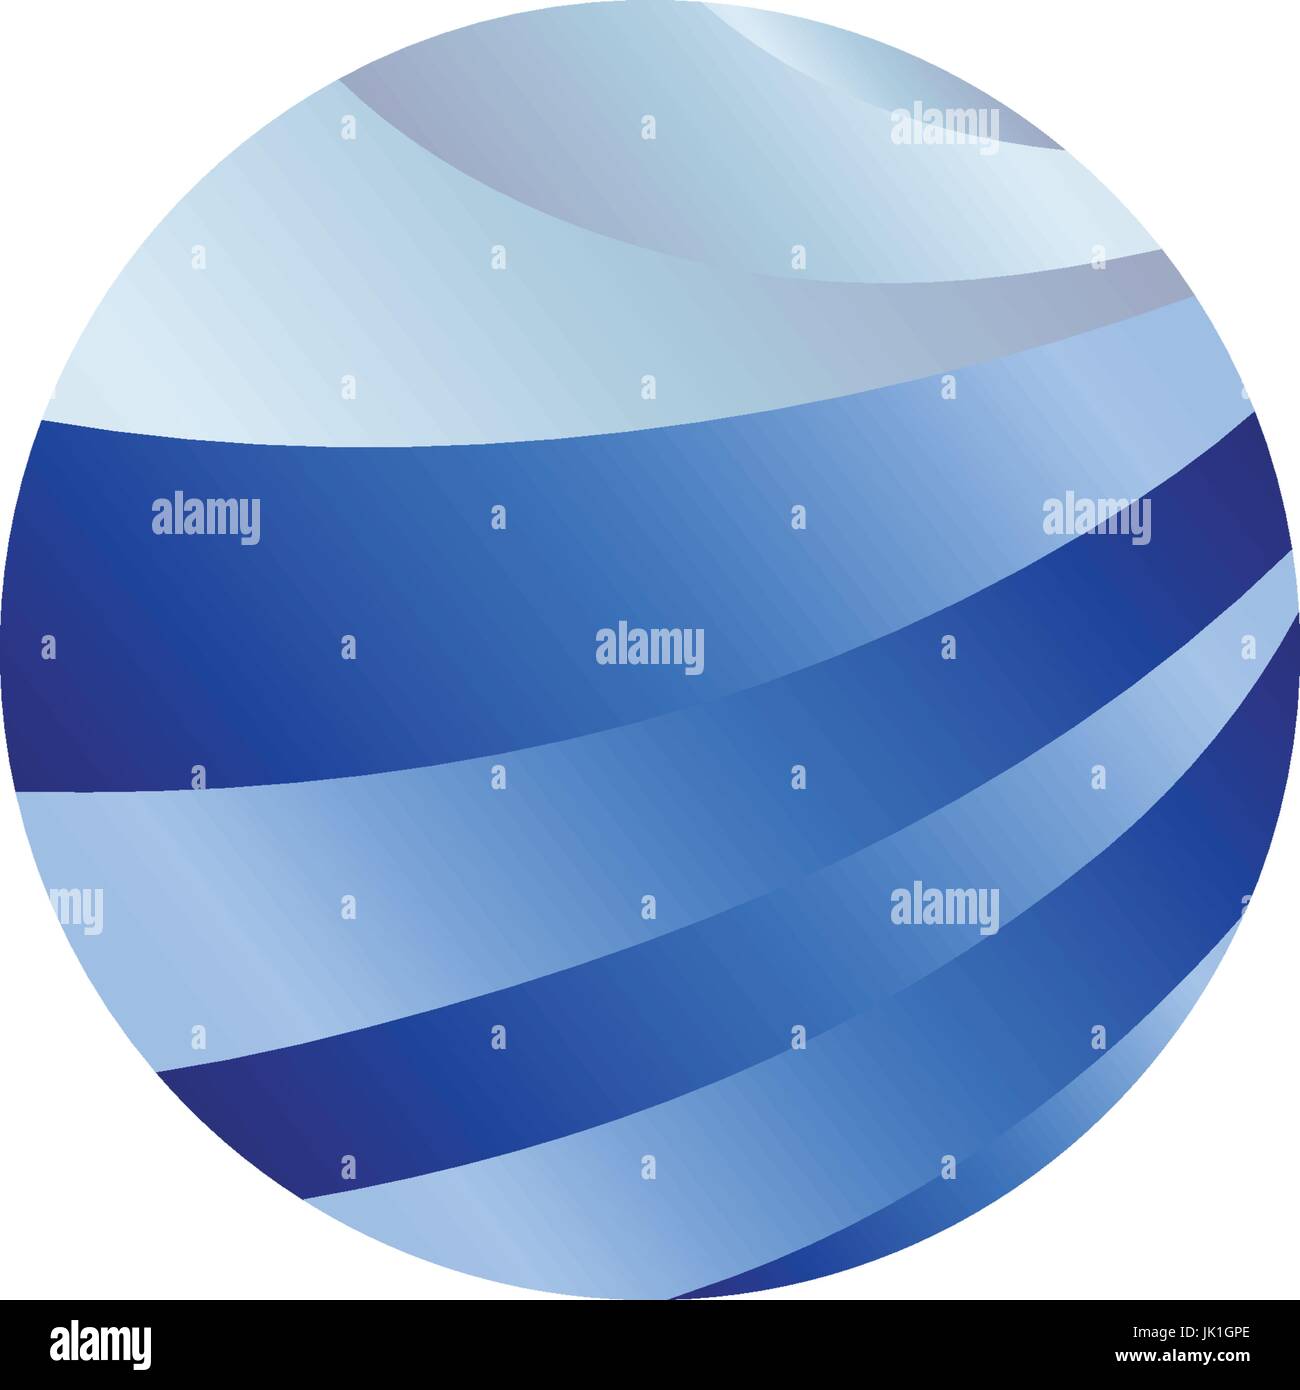 Résumé La forme ronde isolée, liquide couleur bleu océan, vague et sky, cloud logo. Logotype vectoriel stylisé de l'eau. Illustration de Vecteur